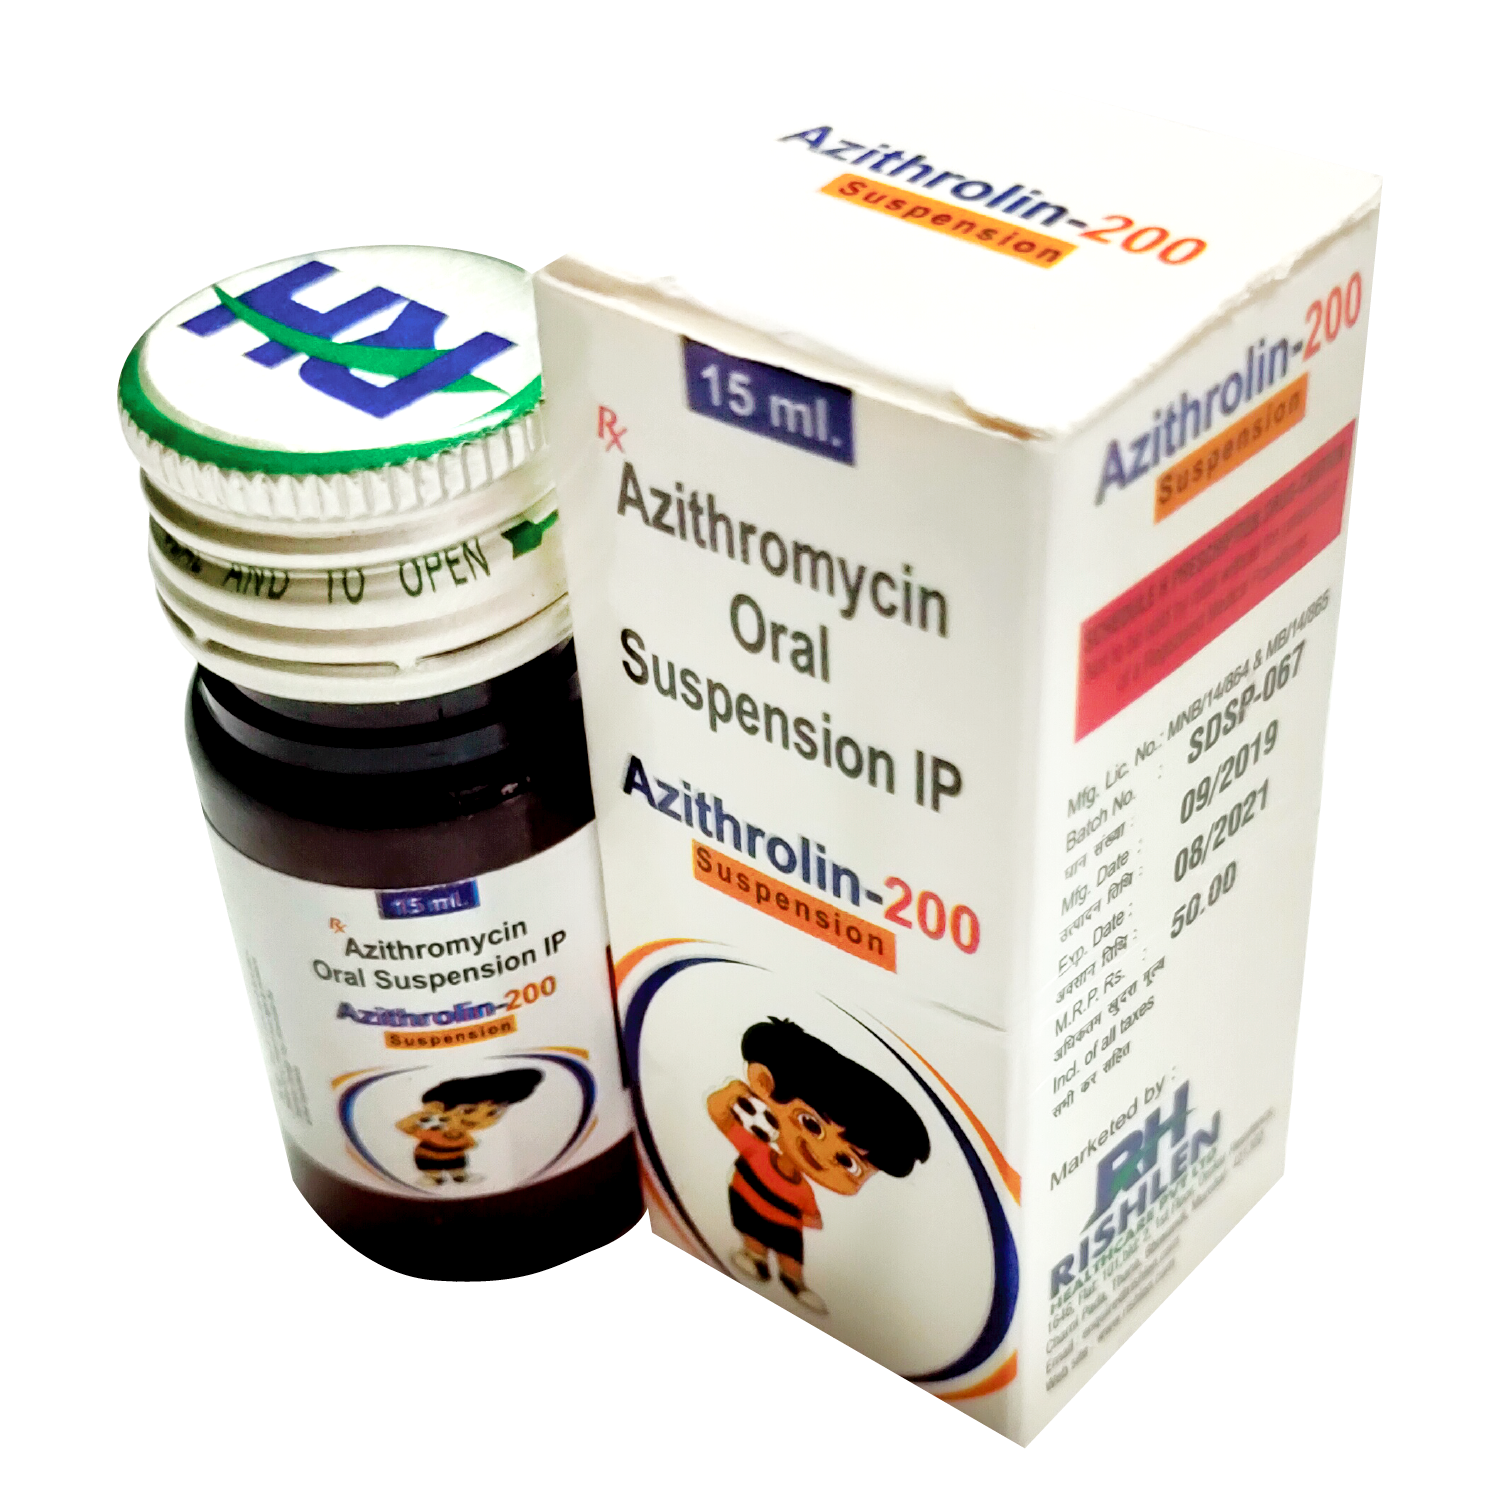 AZITHROLIN 200, Azithrolin, AZITHRAL 200, azithral, Azithromycin 200mg